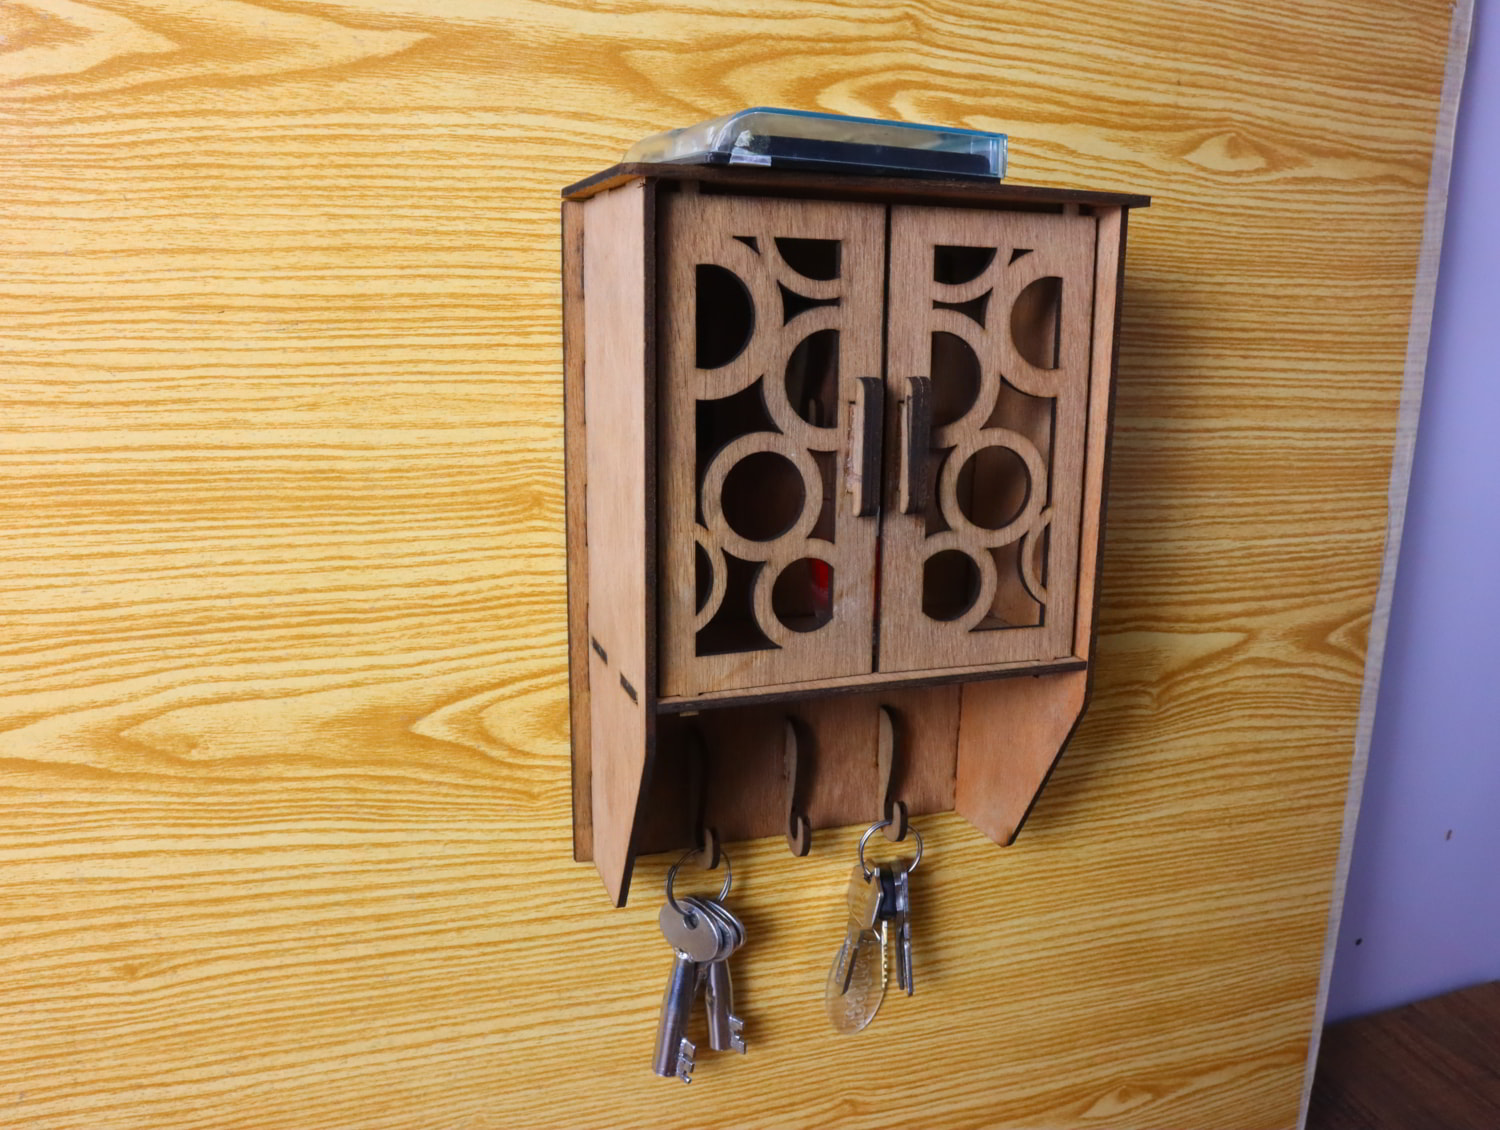 Key cabinet / Teak key cabinet / Wood key cabinet / Wall mounted